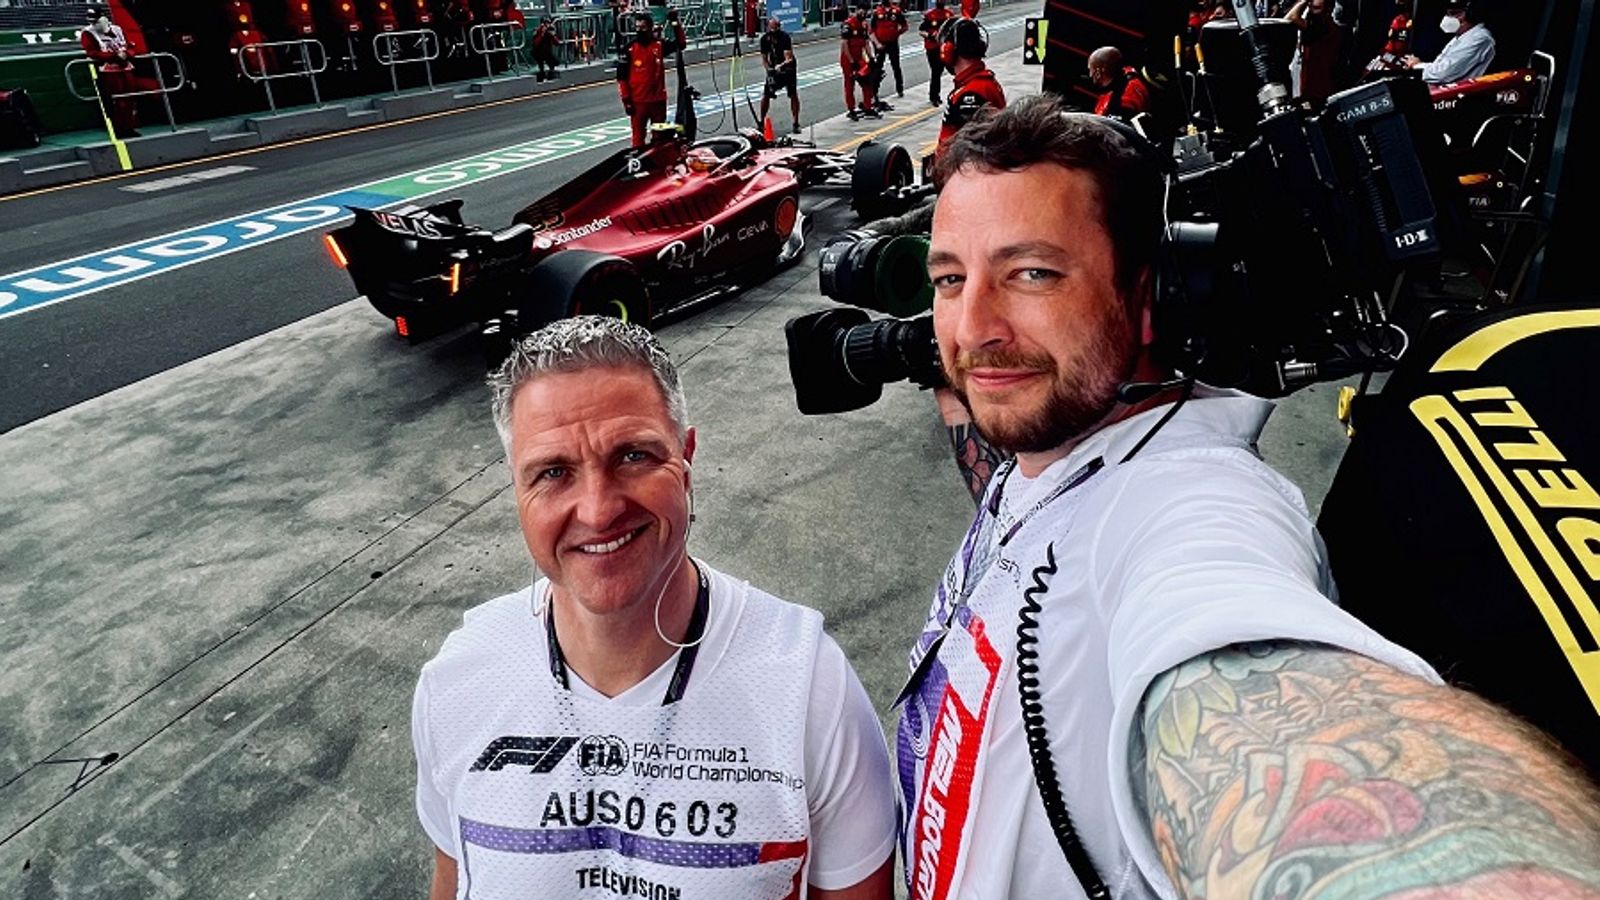 Formel 1 Kameramann Obauer-Bannerfeld gibt Einblicke in seine Arbeit bei Sky Formel 1 News Sky Sport